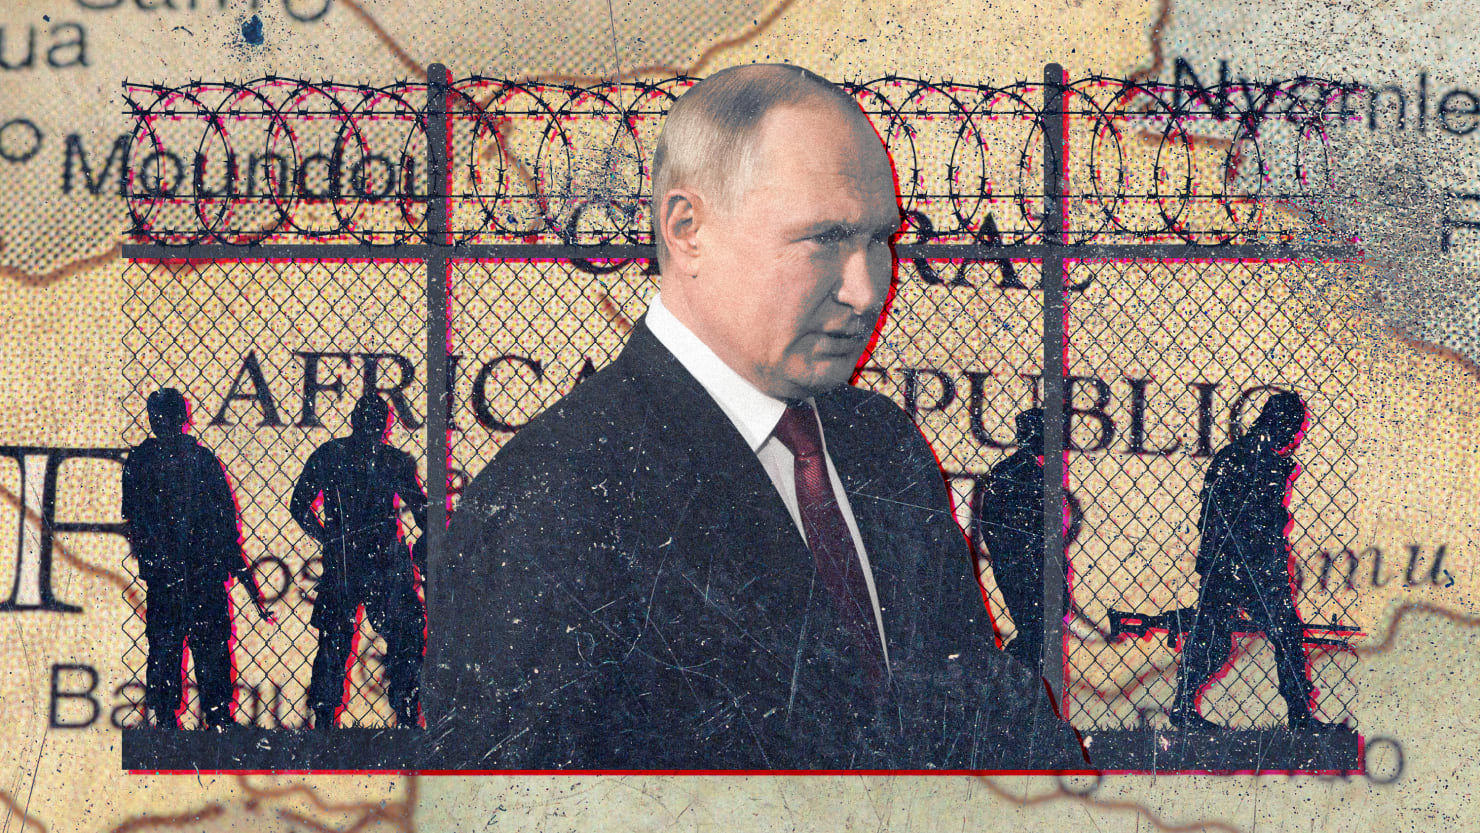 El esquema de reclutamiento de prisiones de Putin da un giro grande y desesperado